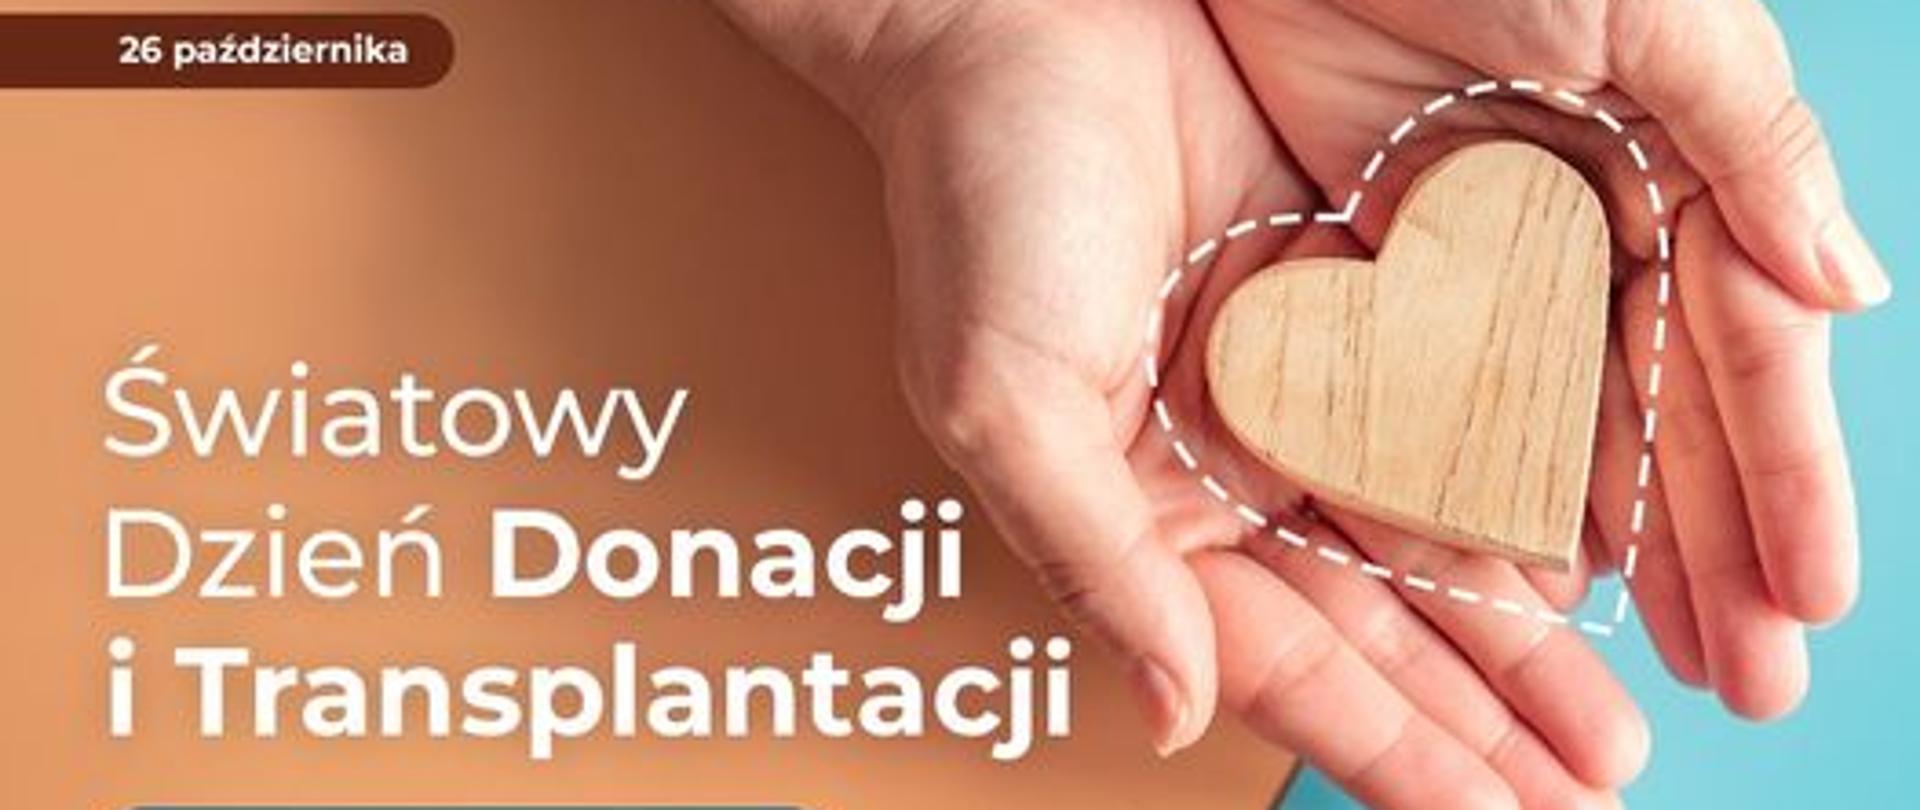 26 października Światowy Dzień Donacji i Transplantacji